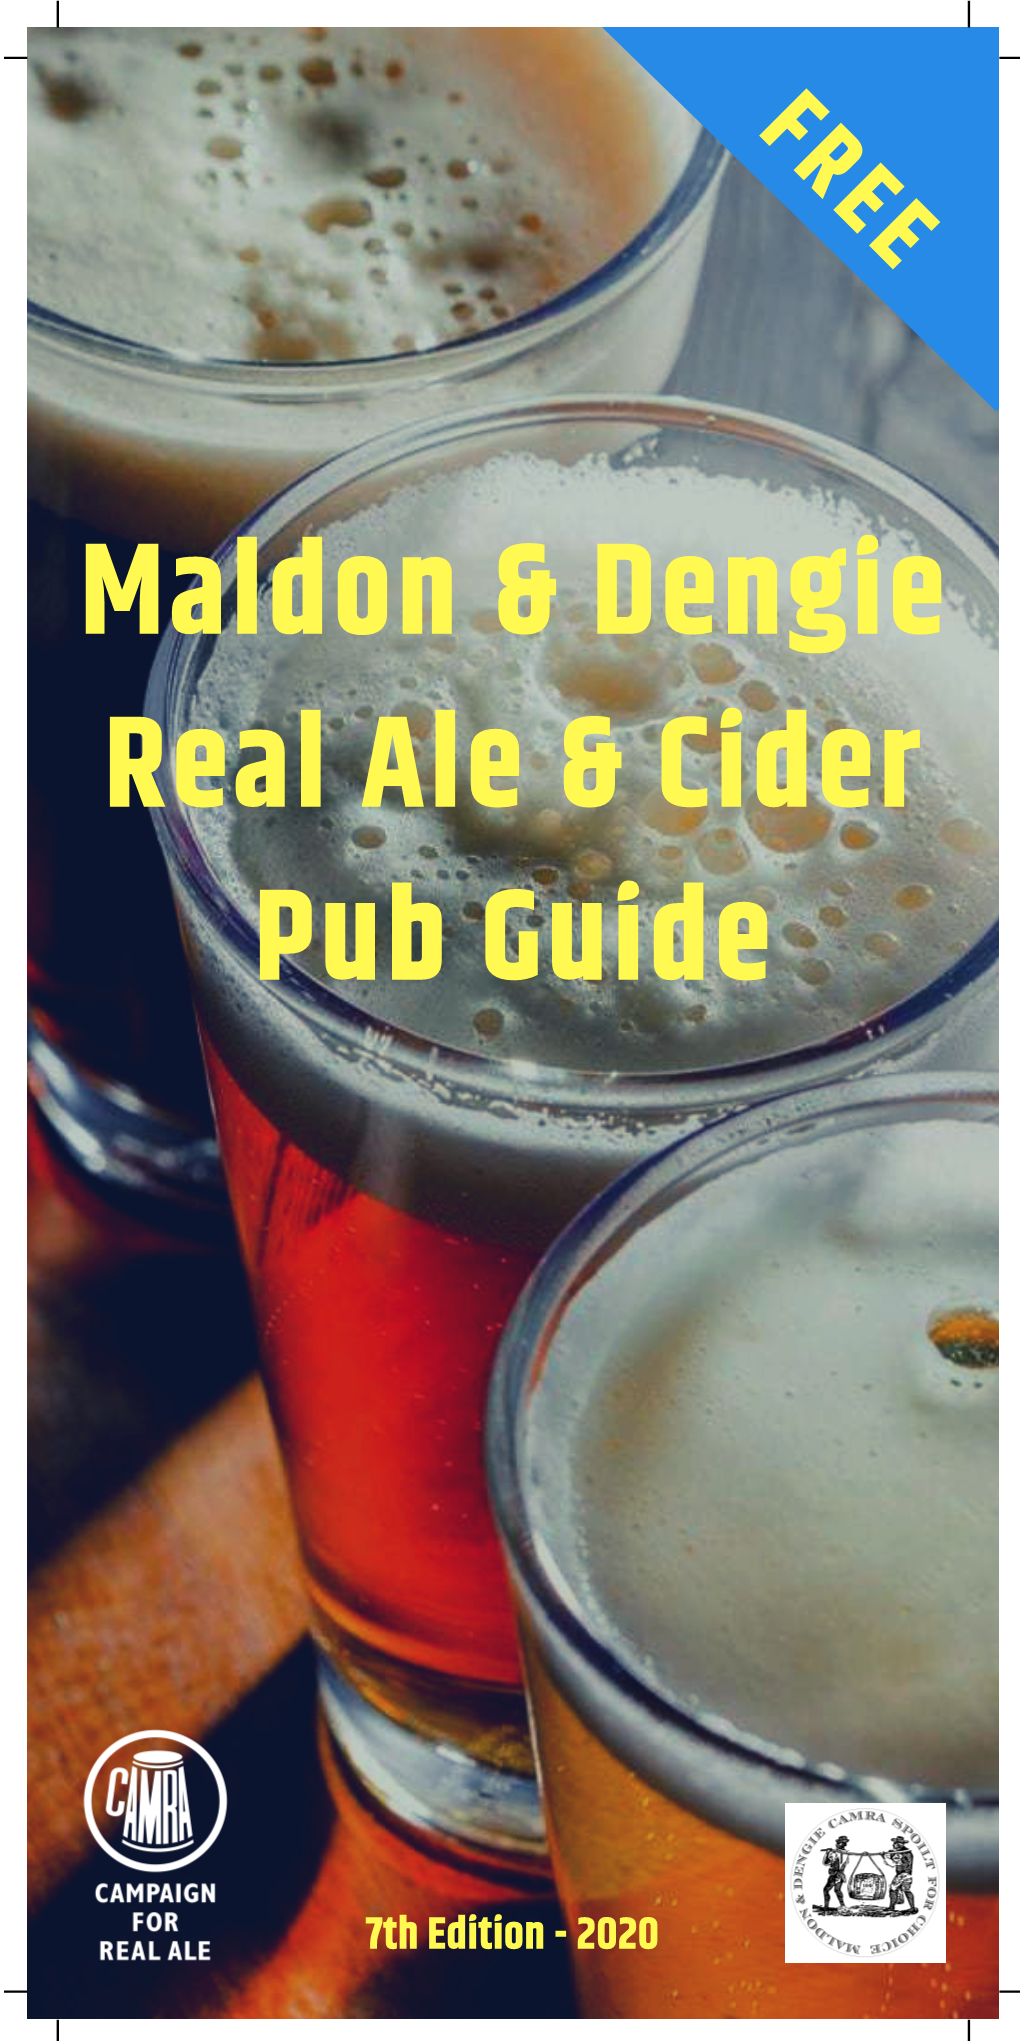 2020 Maldon & Dengie Pub Guide